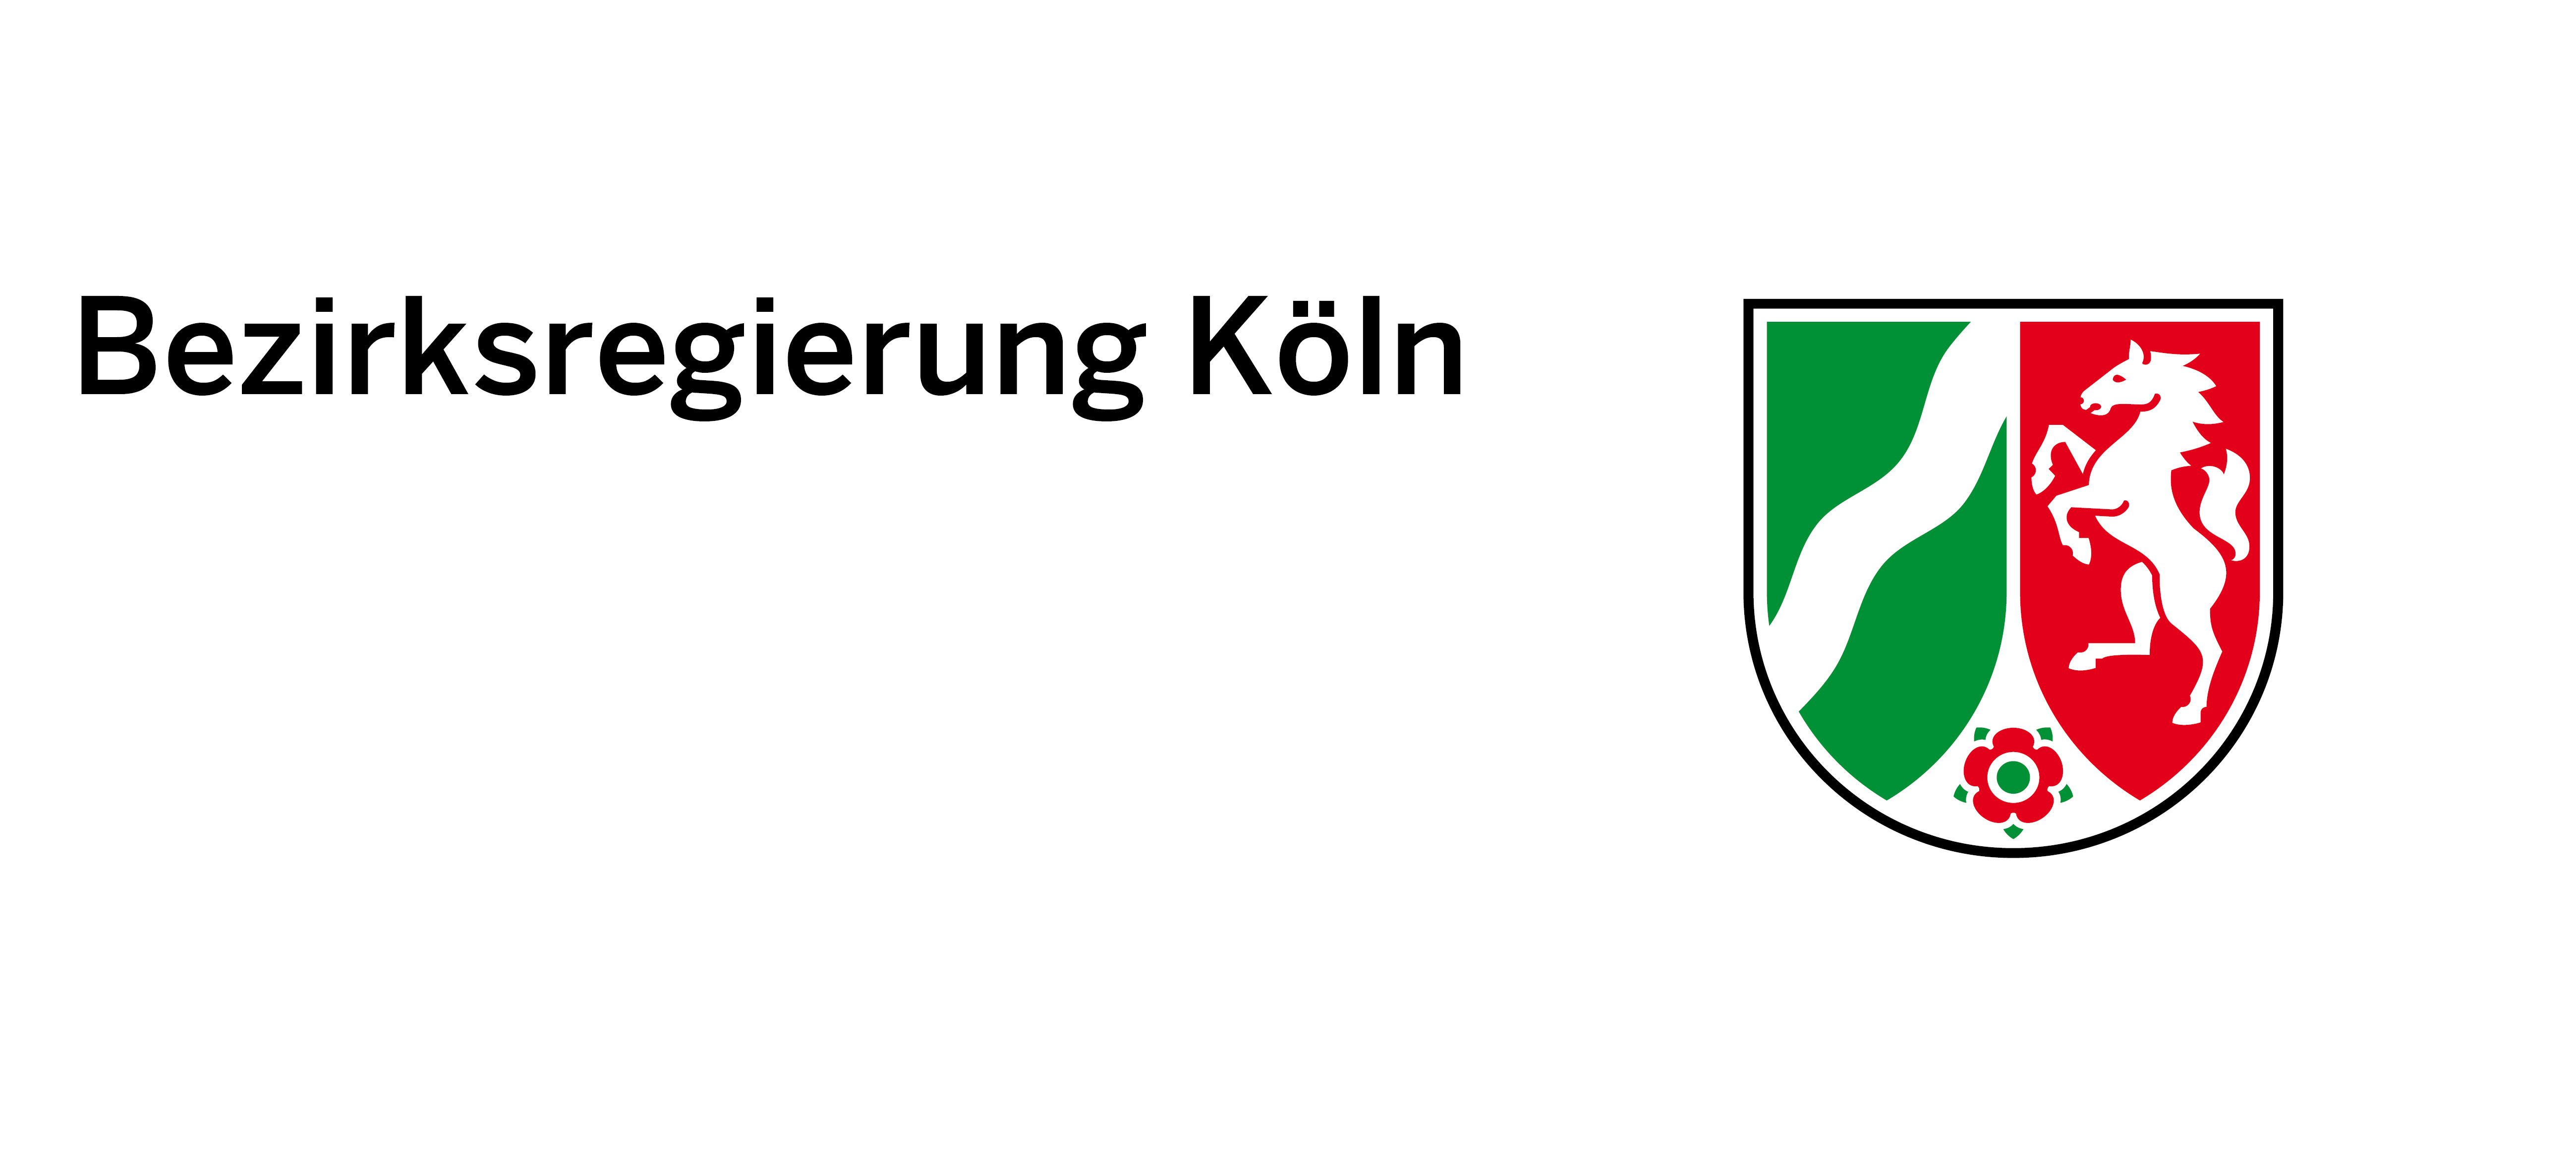 BRK_Logo.jpg